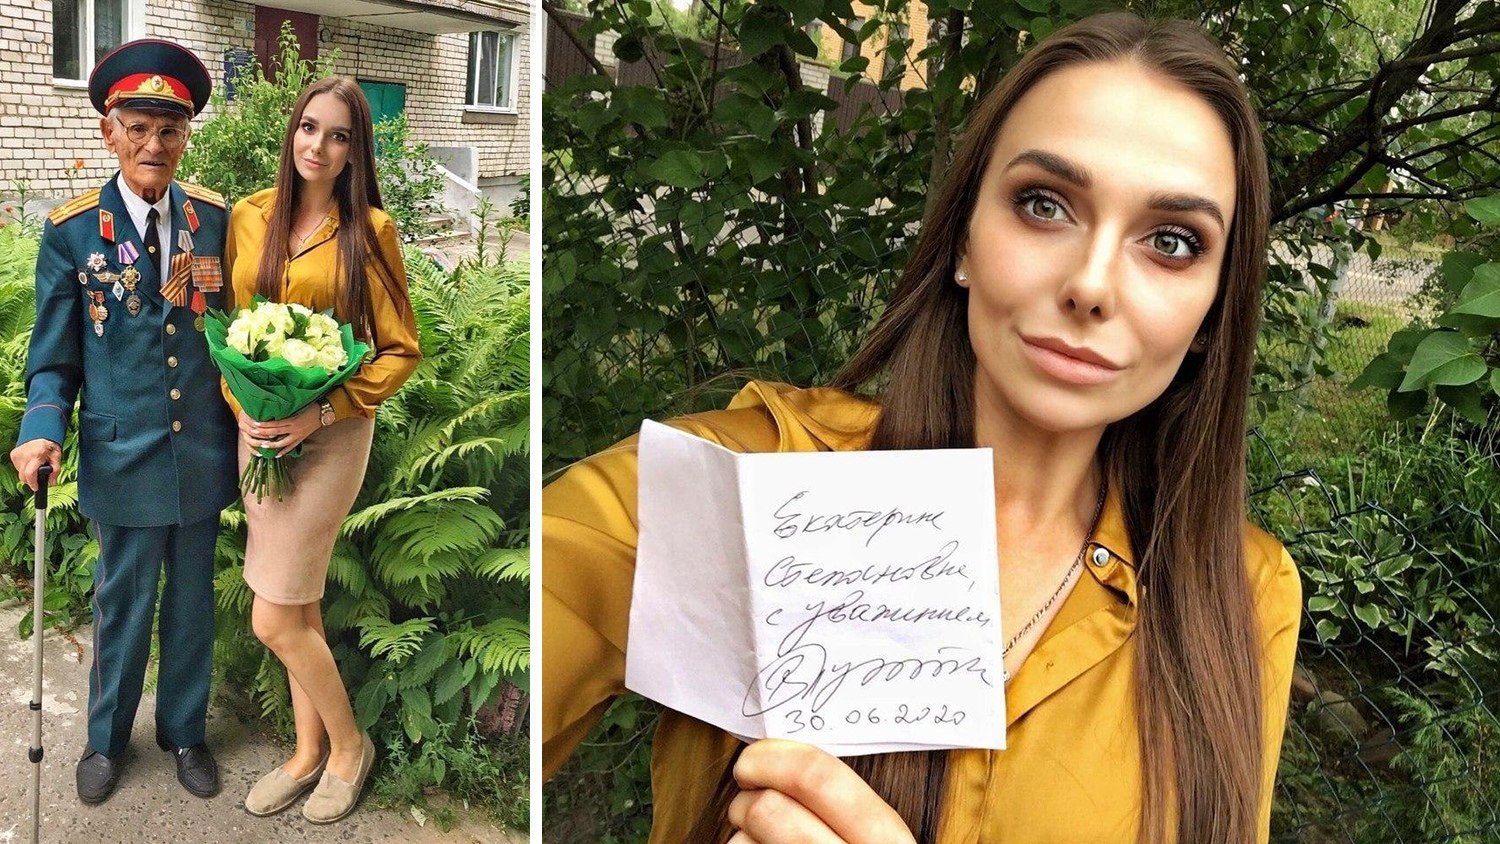 Жительнице Твери передали автограф от Путина